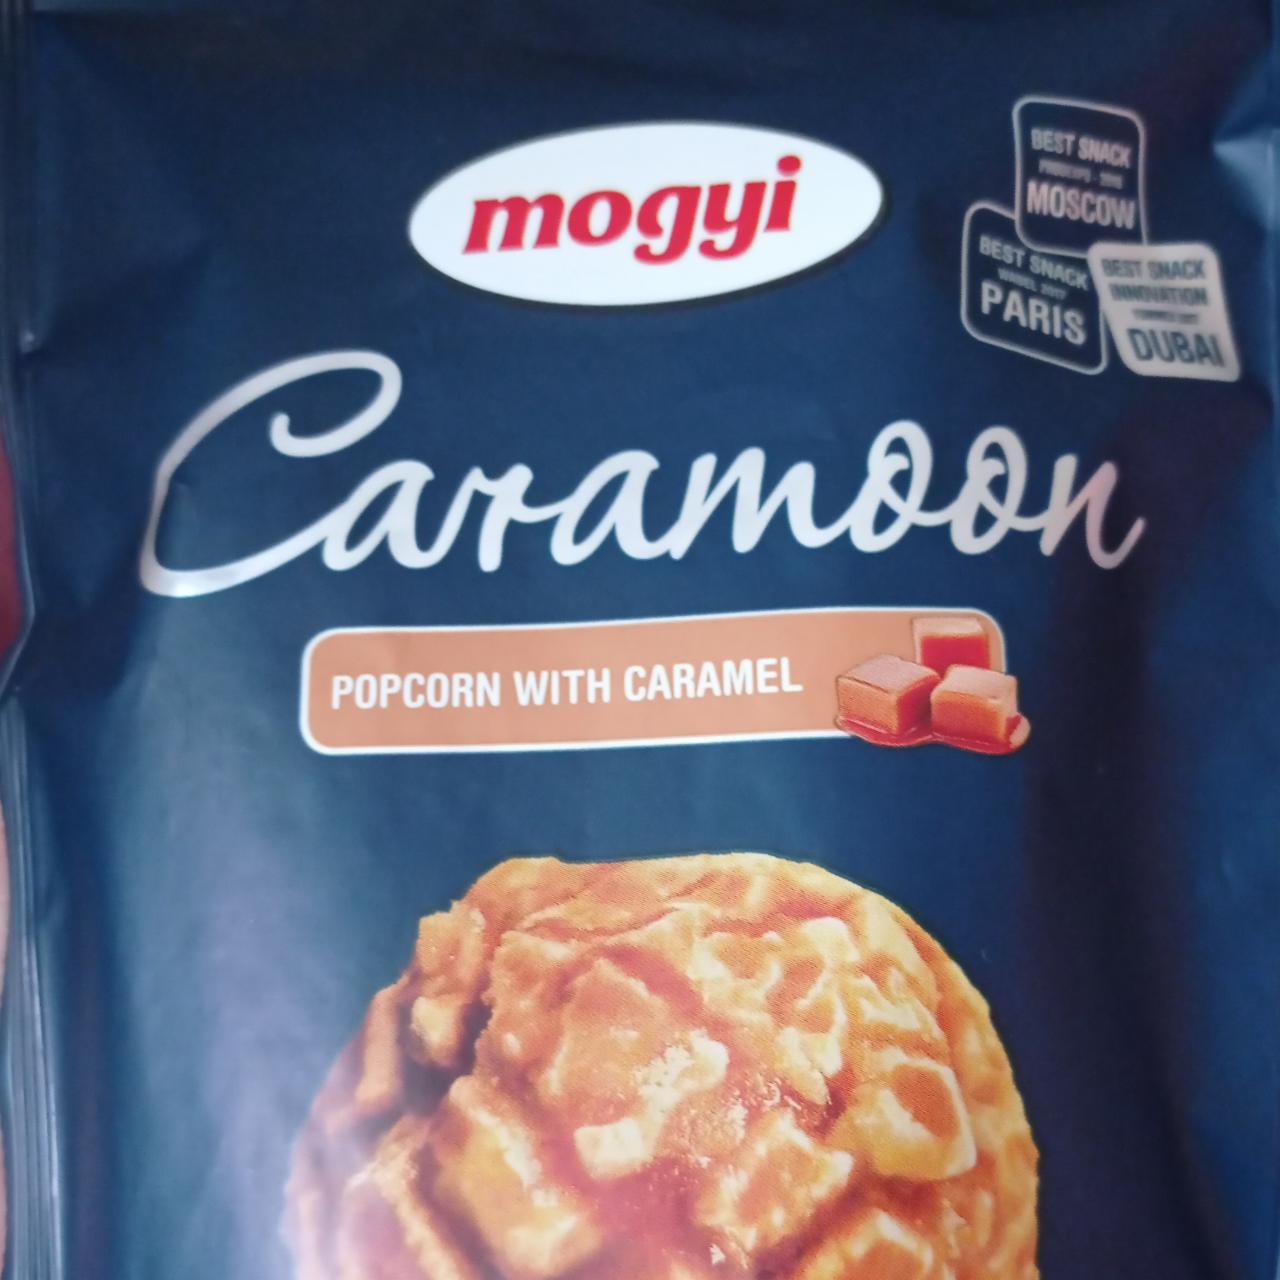 Fotografie - Caramoon Popcorn with Caramel Mogyi